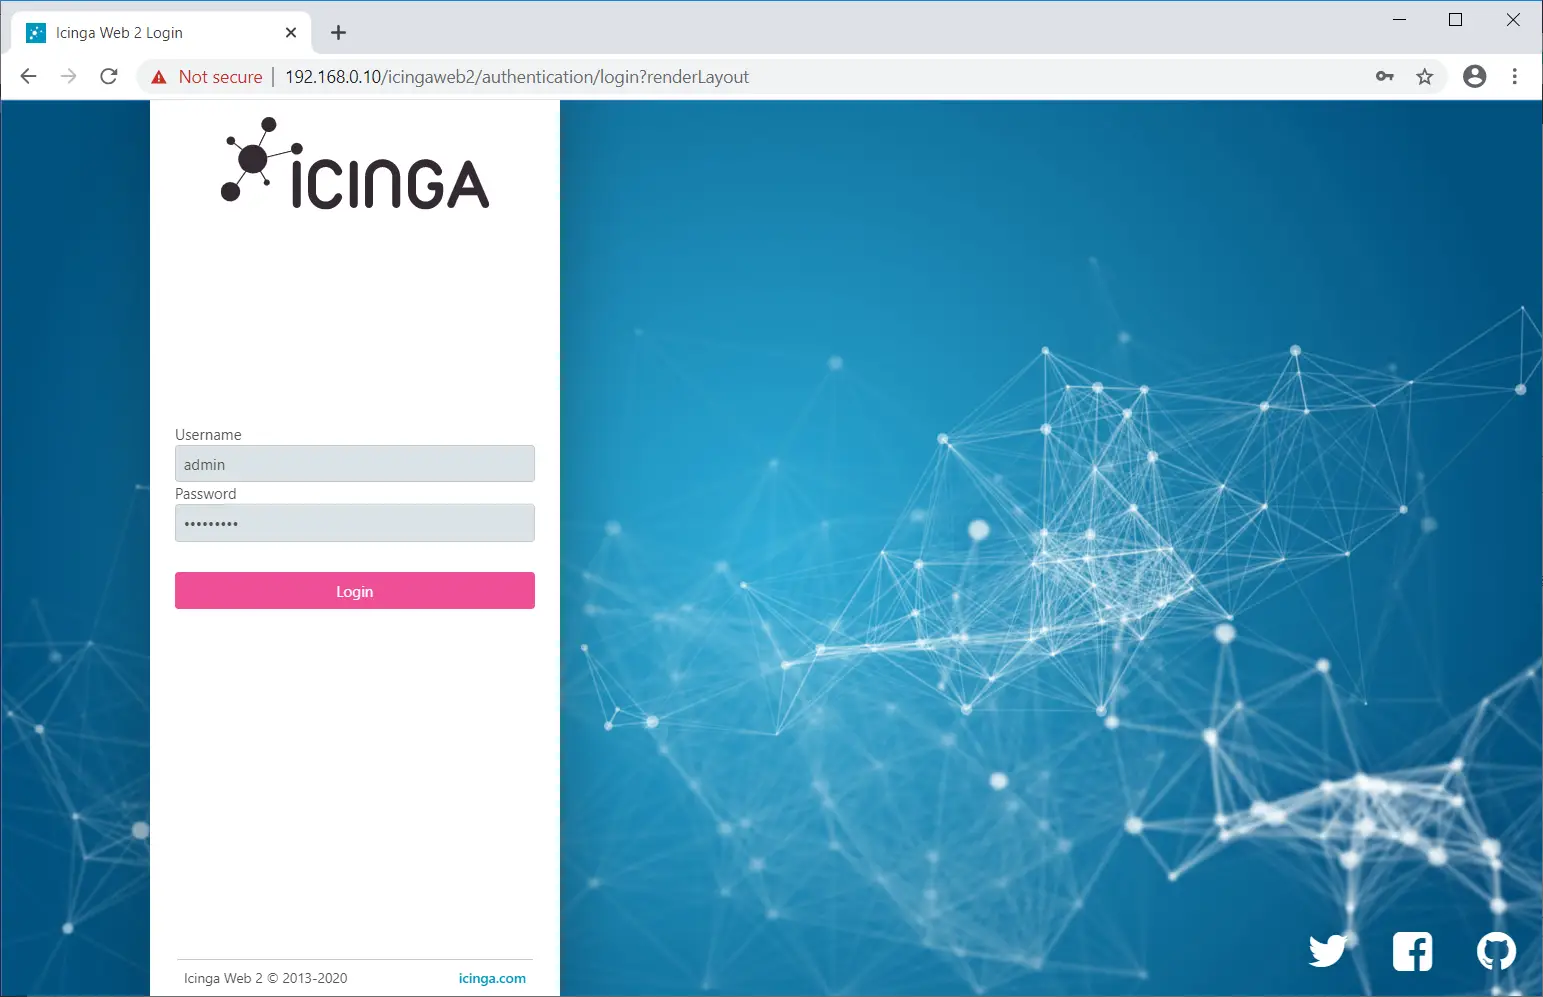 Login to Icinga Web 2